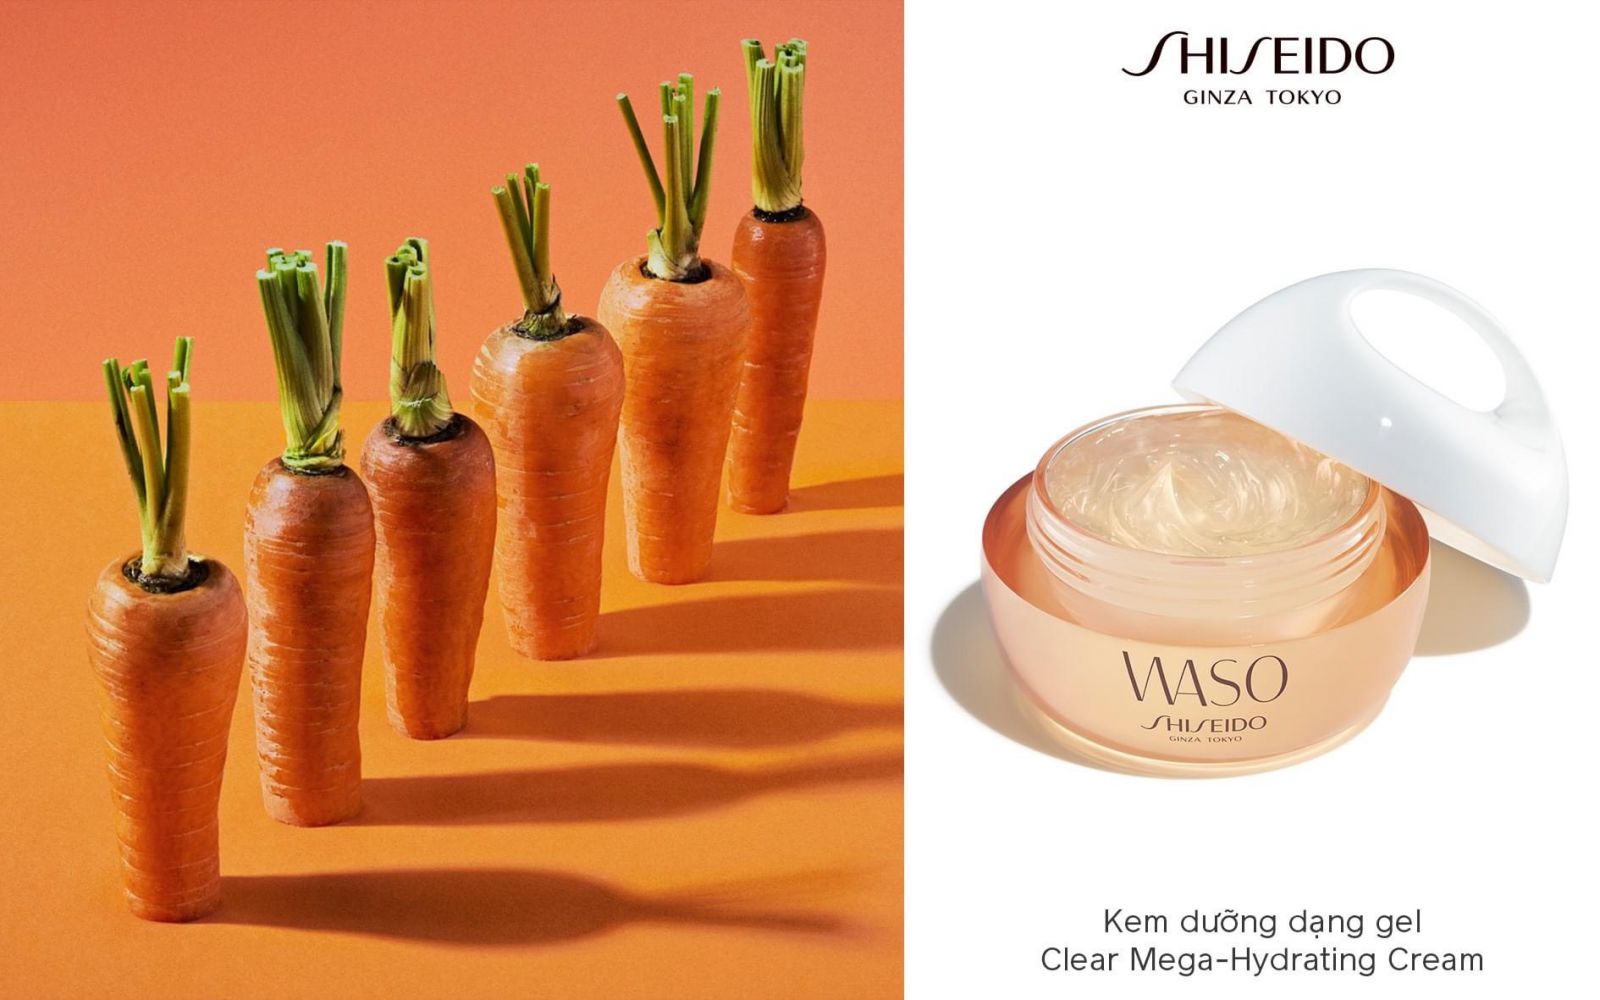 Shiseido Waso Clear Mega - Hydrating Cream cung cấp dưỡng chất cần thiết cho làn da căng mịn và tươi mới cả ngày